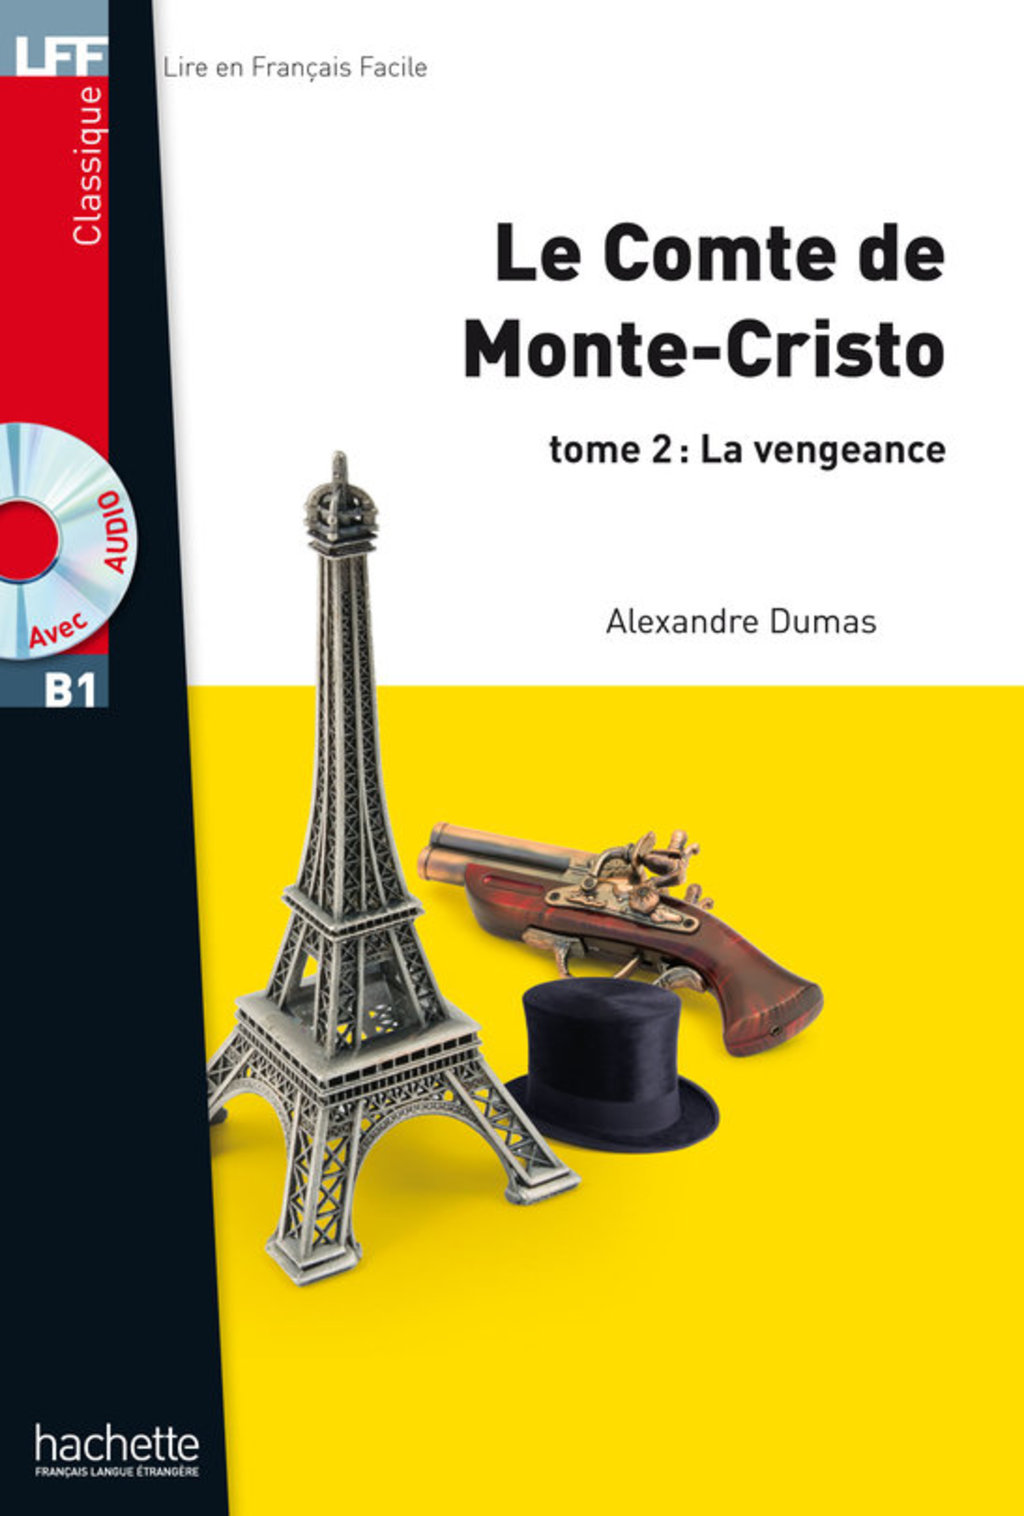 LFF B1 - Le Comte de Monte Cristo - Tome 2 (ebook) (eBook) - Alexandre Dumas,